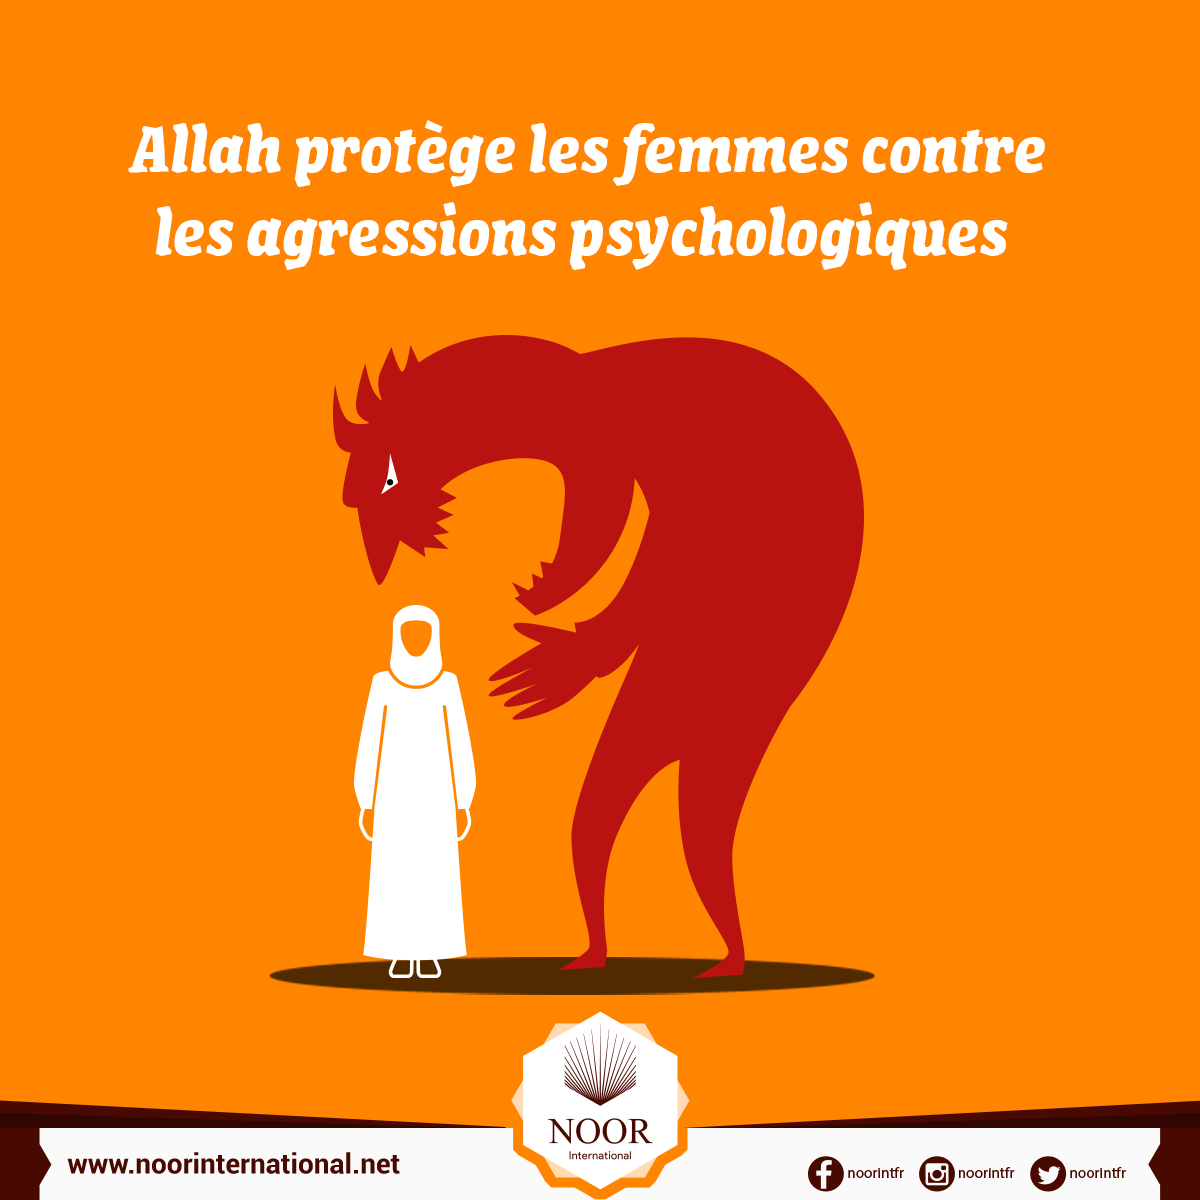 Allah protège les femmes contre les agressions psychologiques